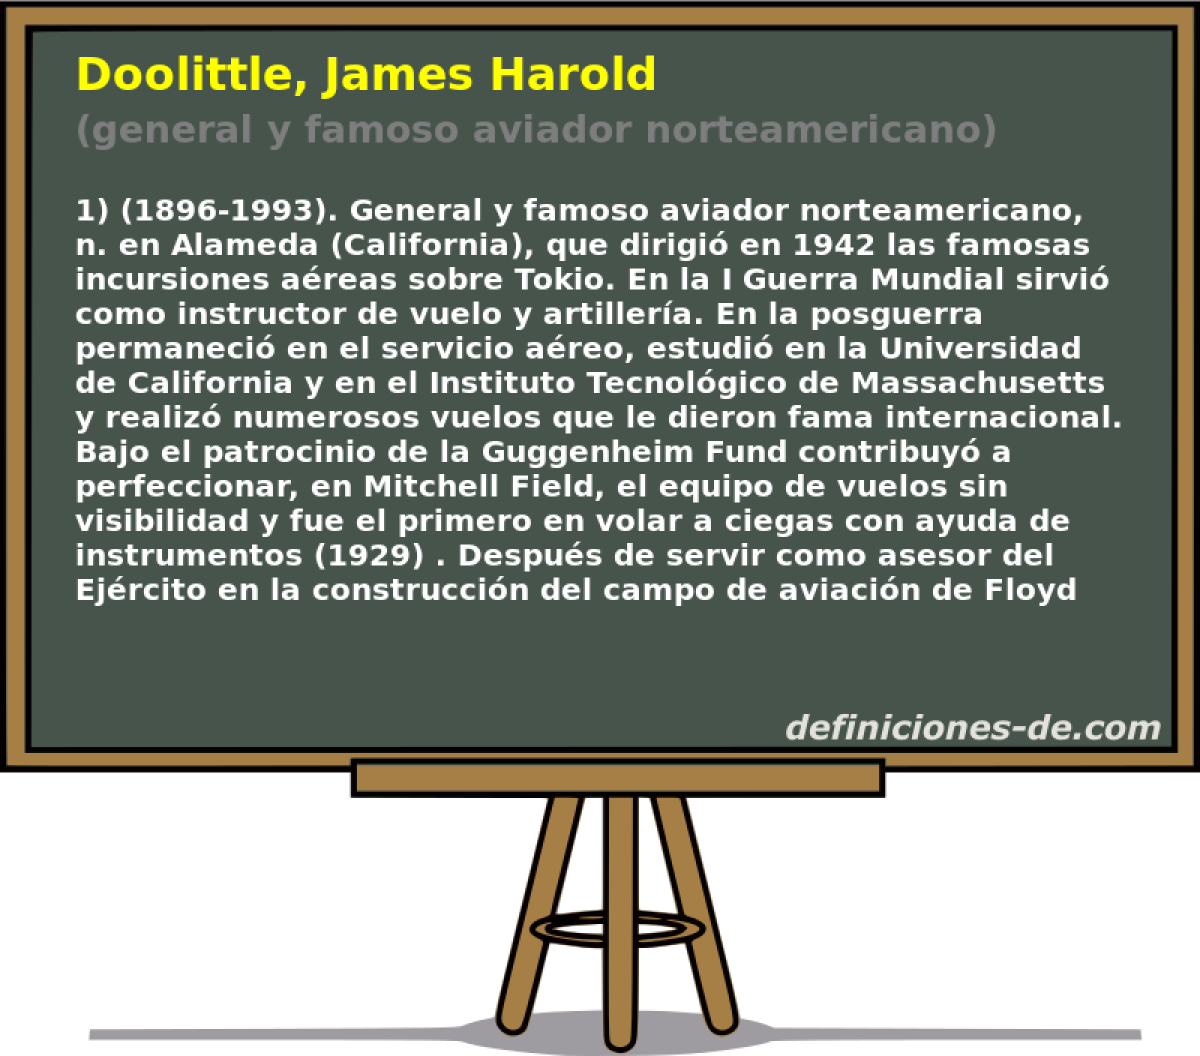 Doolittle, James Harold (general y famoso aviador norteamericano)